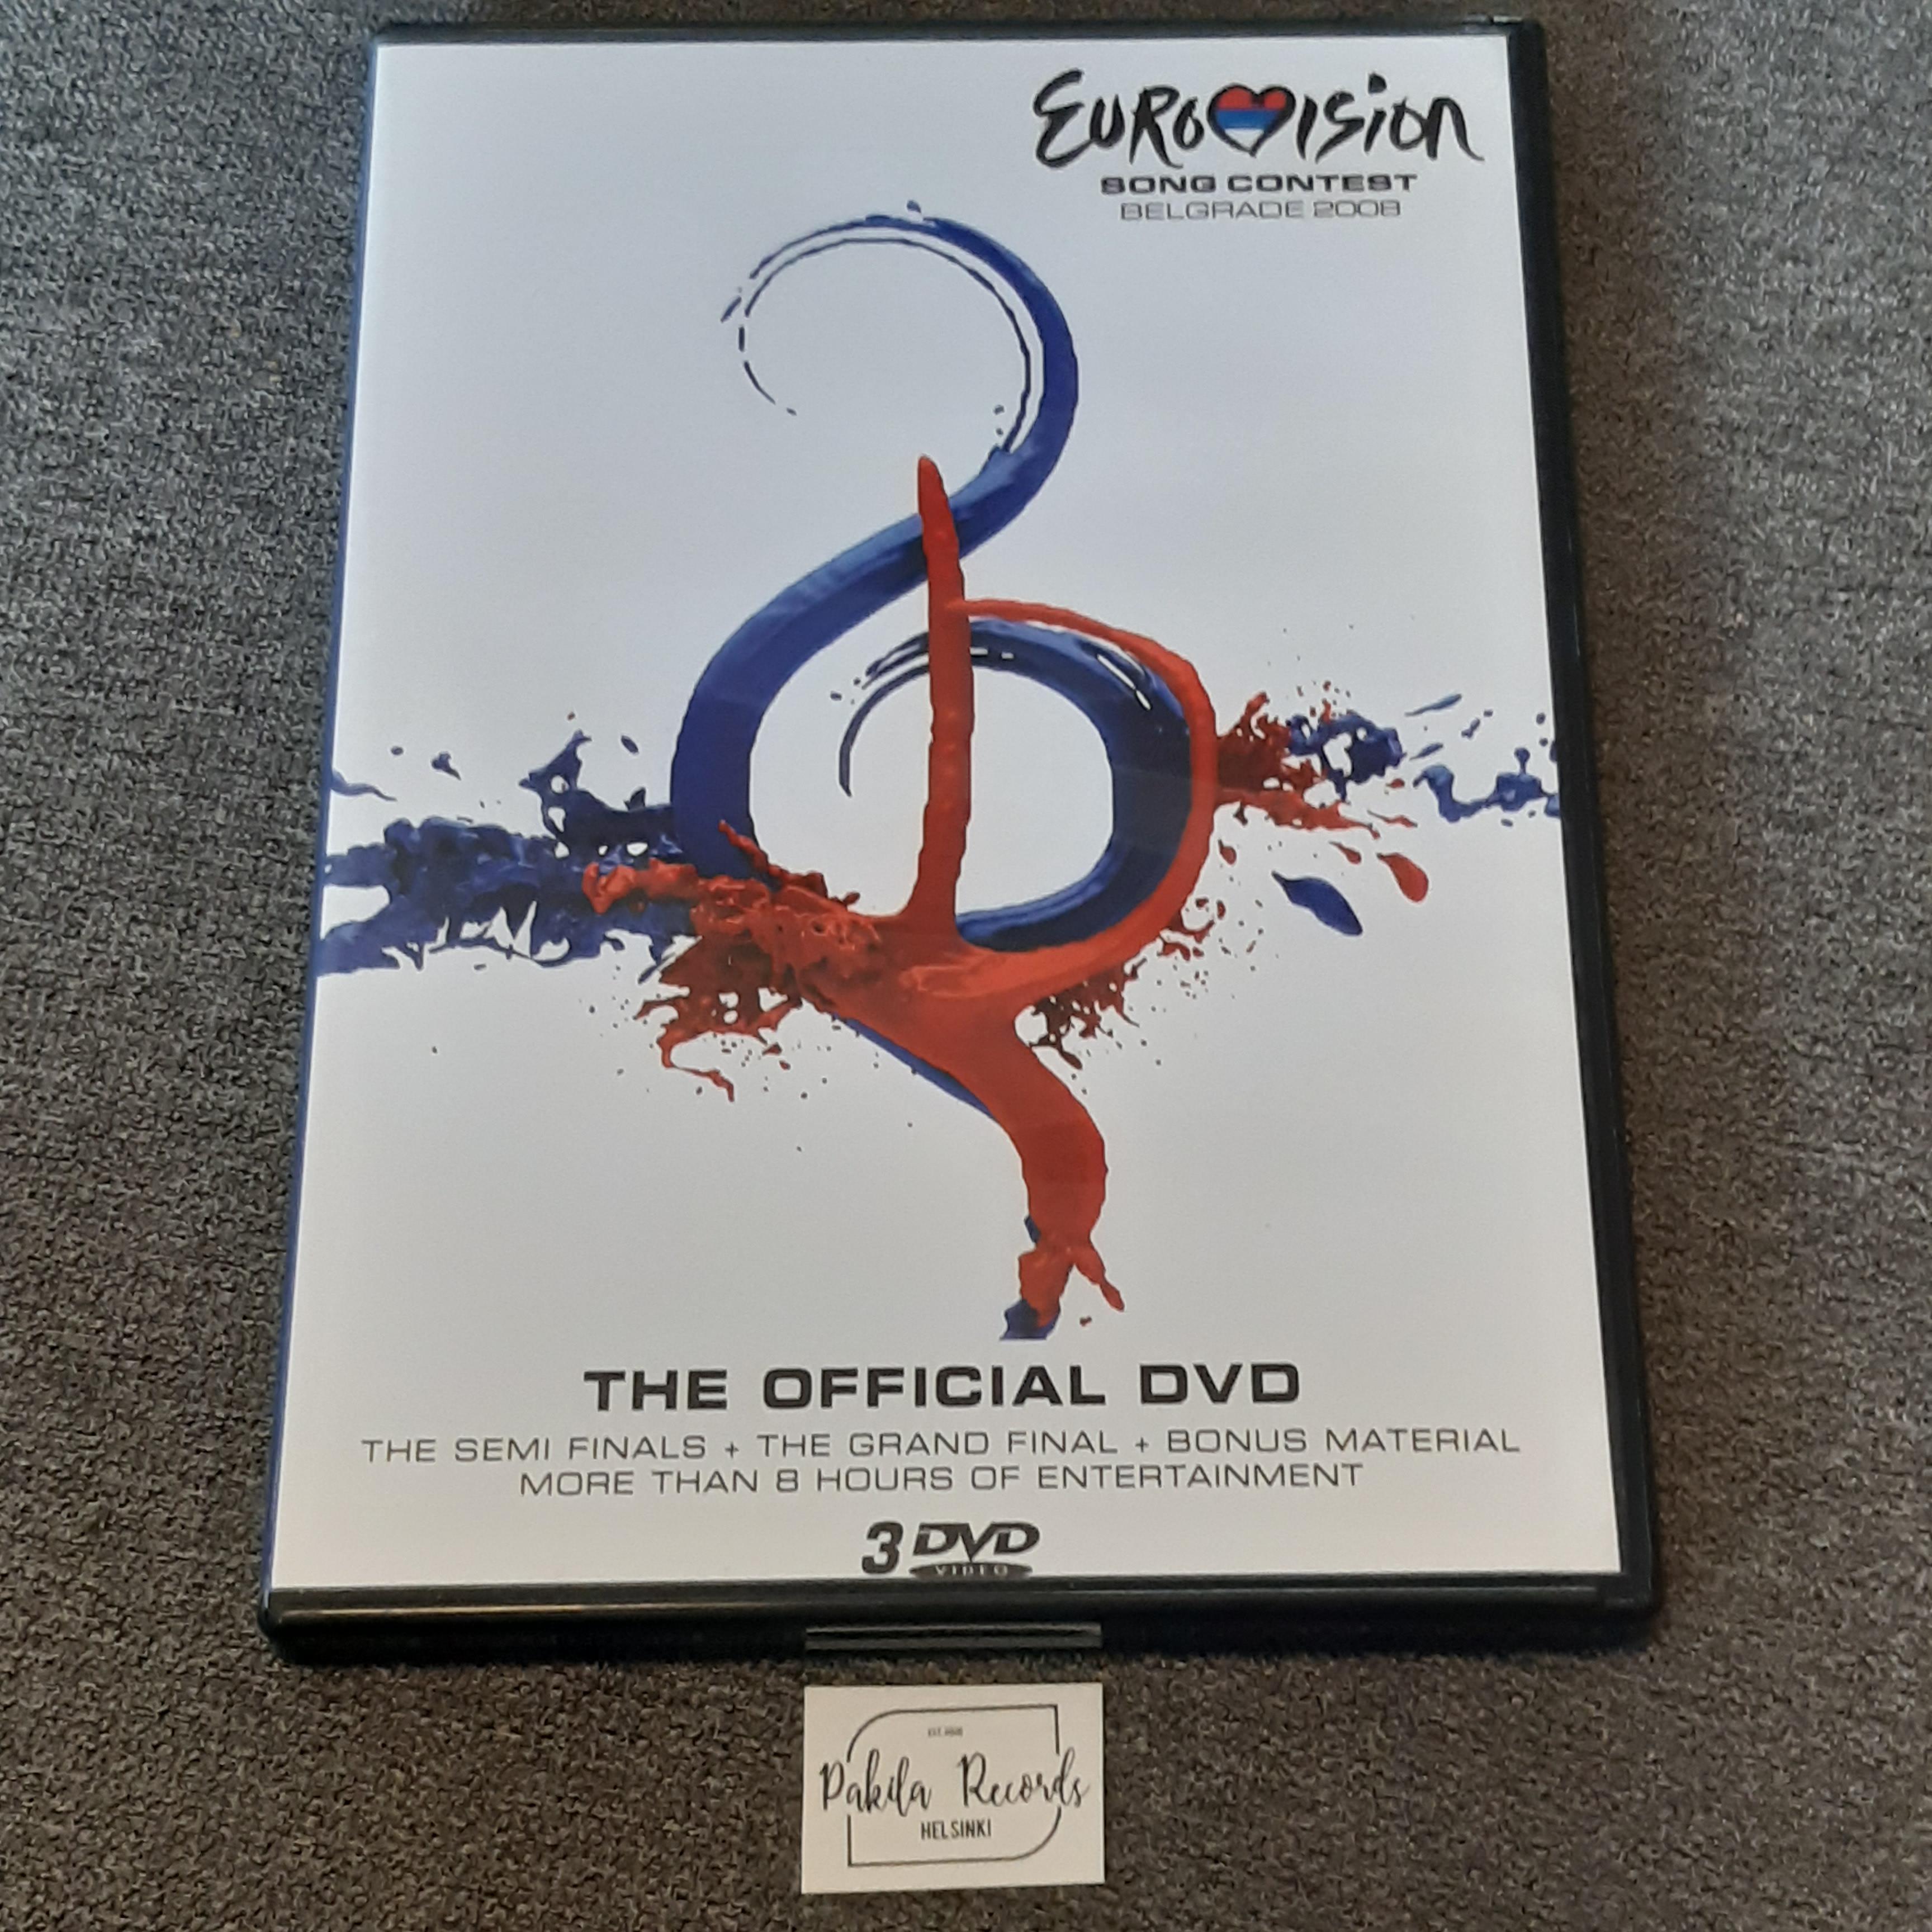 Eurovision Song Contest Belgrade 2008 - 3 DVD (käytetty)